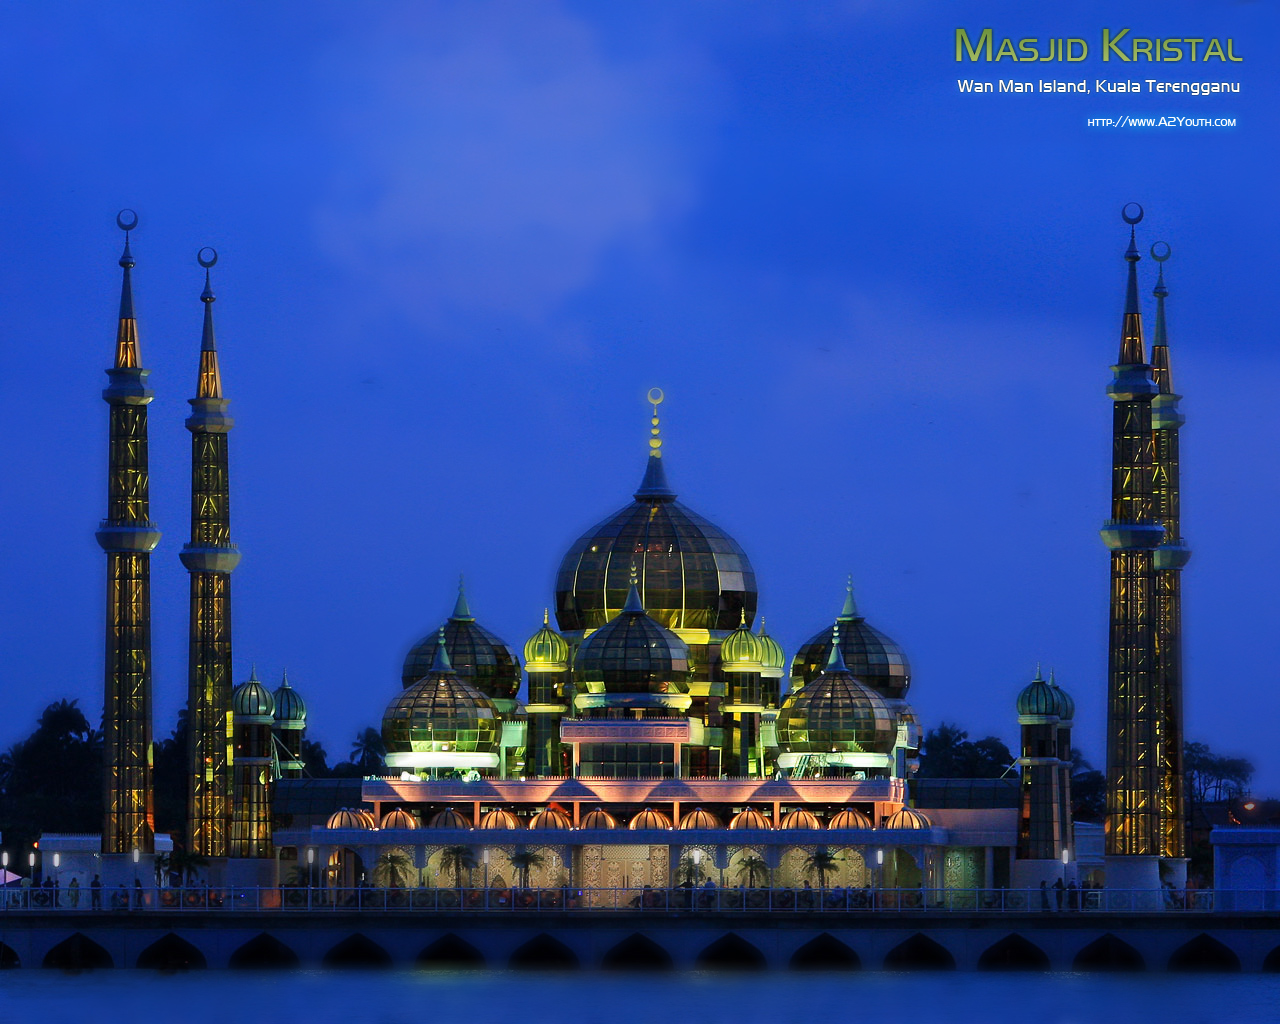 Masjid Kristal Masjids Islamic Wallpaper A2youth